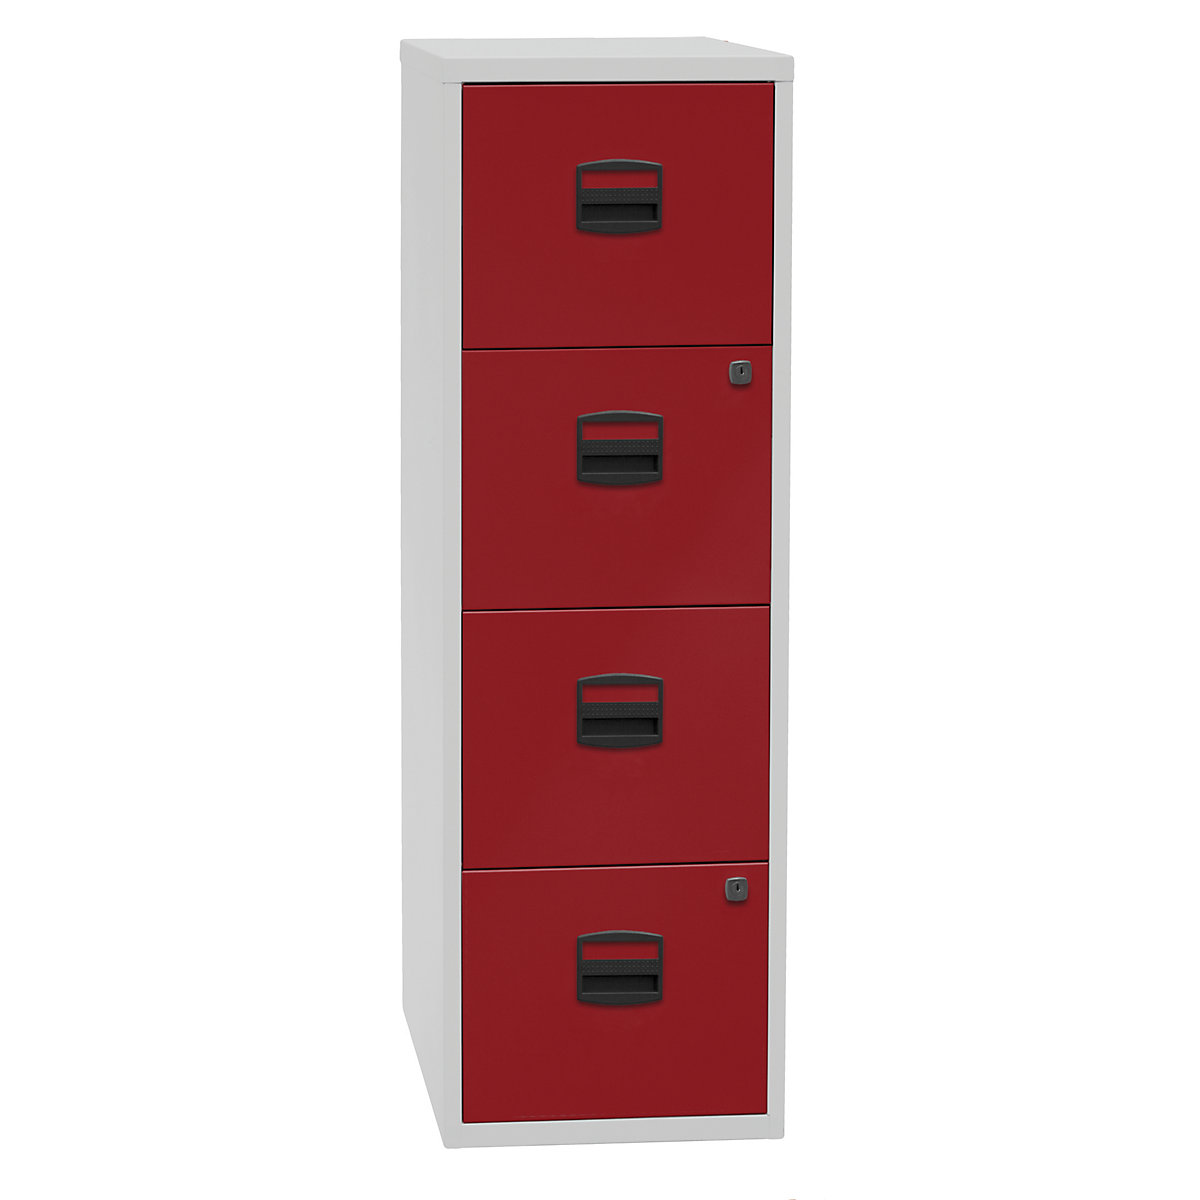 Classificatore per cartelle sospese PFA – BISLEY, 4 cassetti, grigio chiaro / rosso cardinale-2